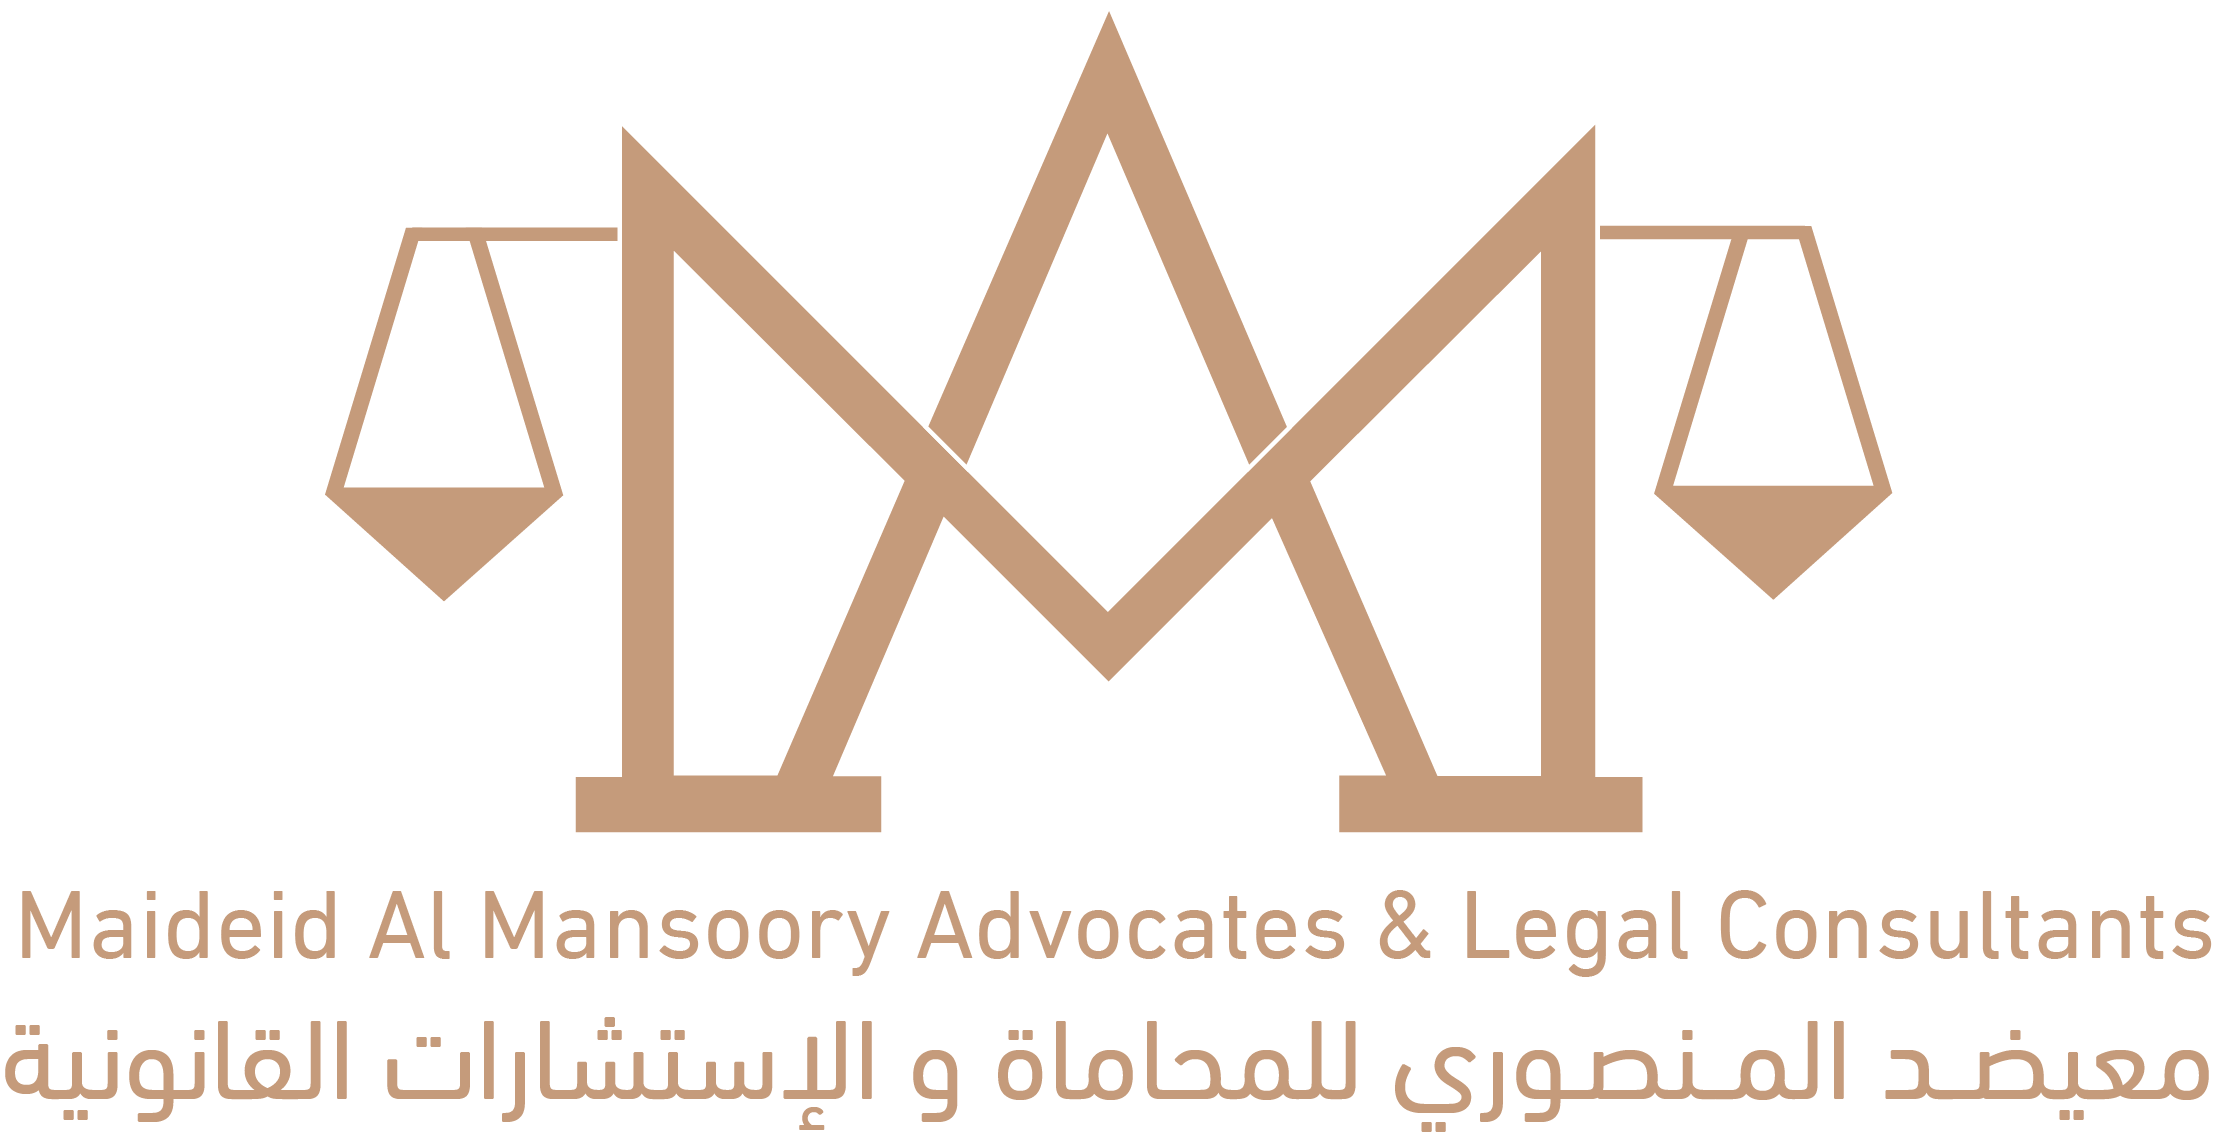 Maideid Al Mansoory